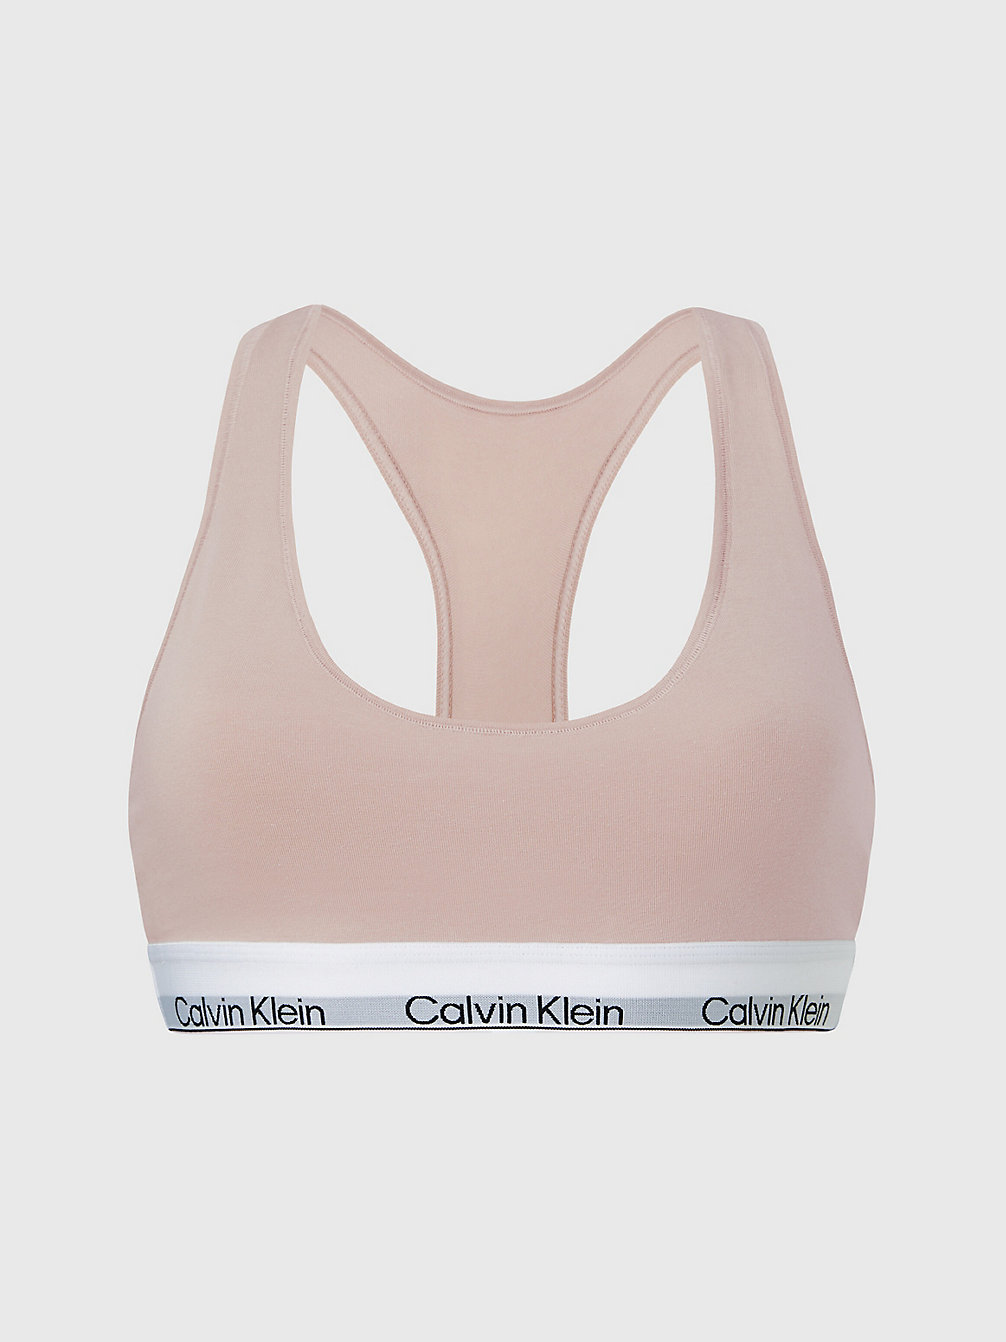 CEDAR Bralette – Modern Cotton undefined Damen Calvin Klein